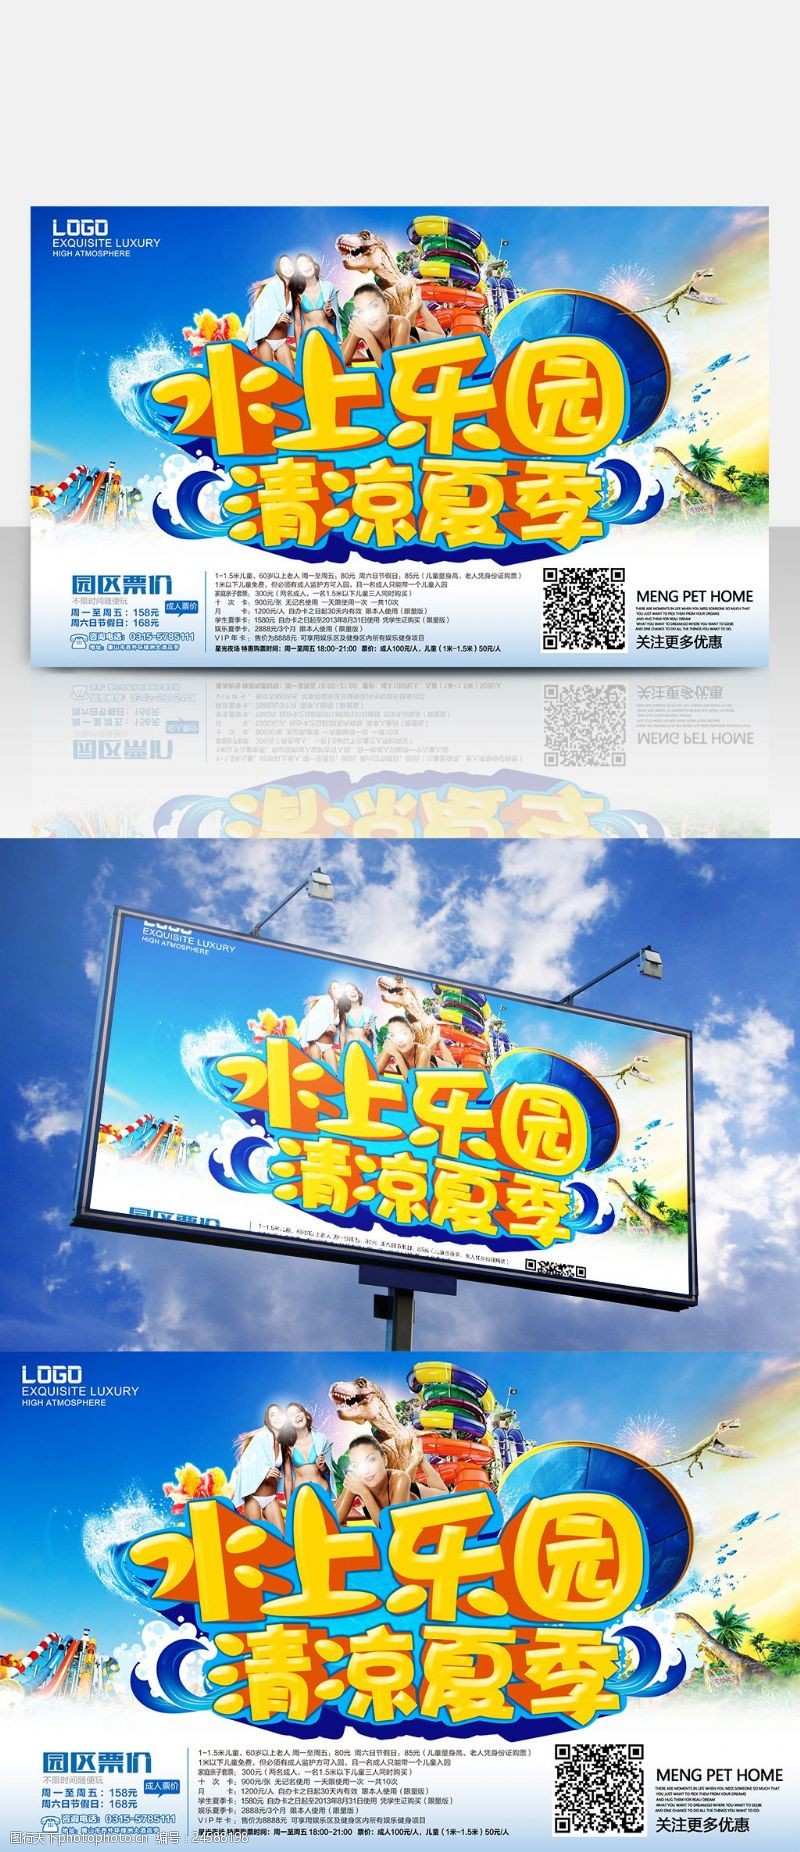 欢乐暑期水上乐园夏季游玩宣传促销海报设计